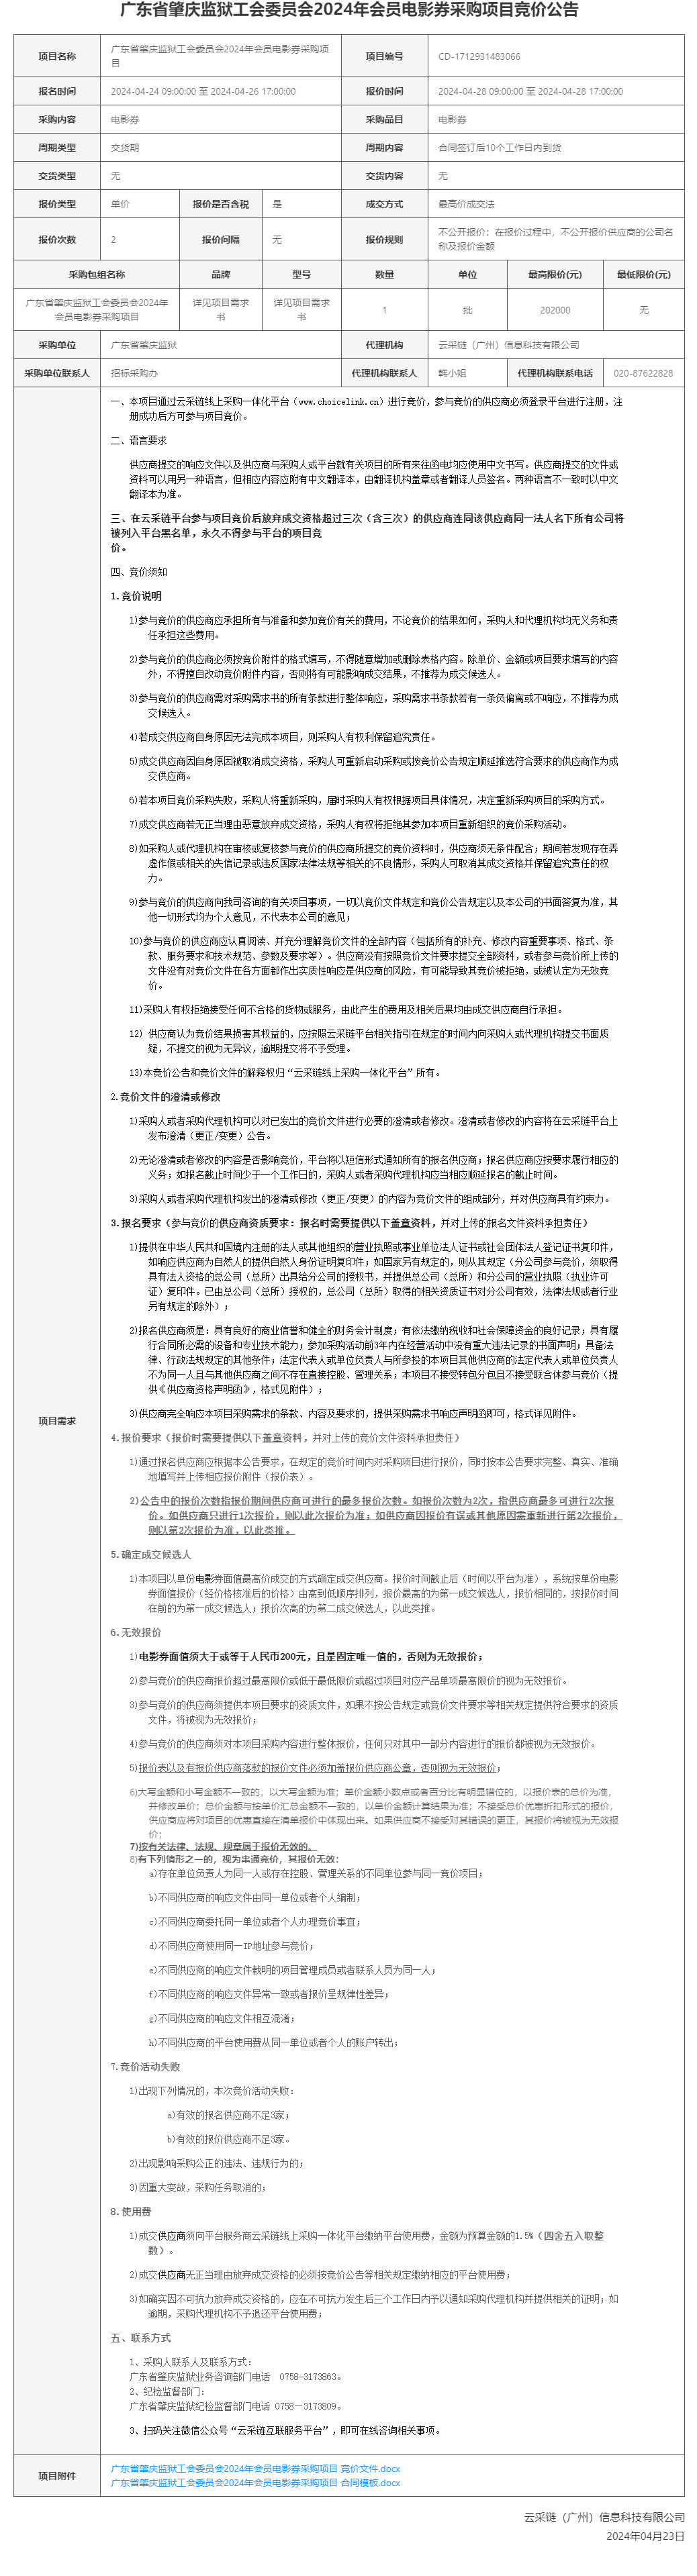 广东省肇庆监狱工会委员会2024年会员电影券采购项目竞价公告.png